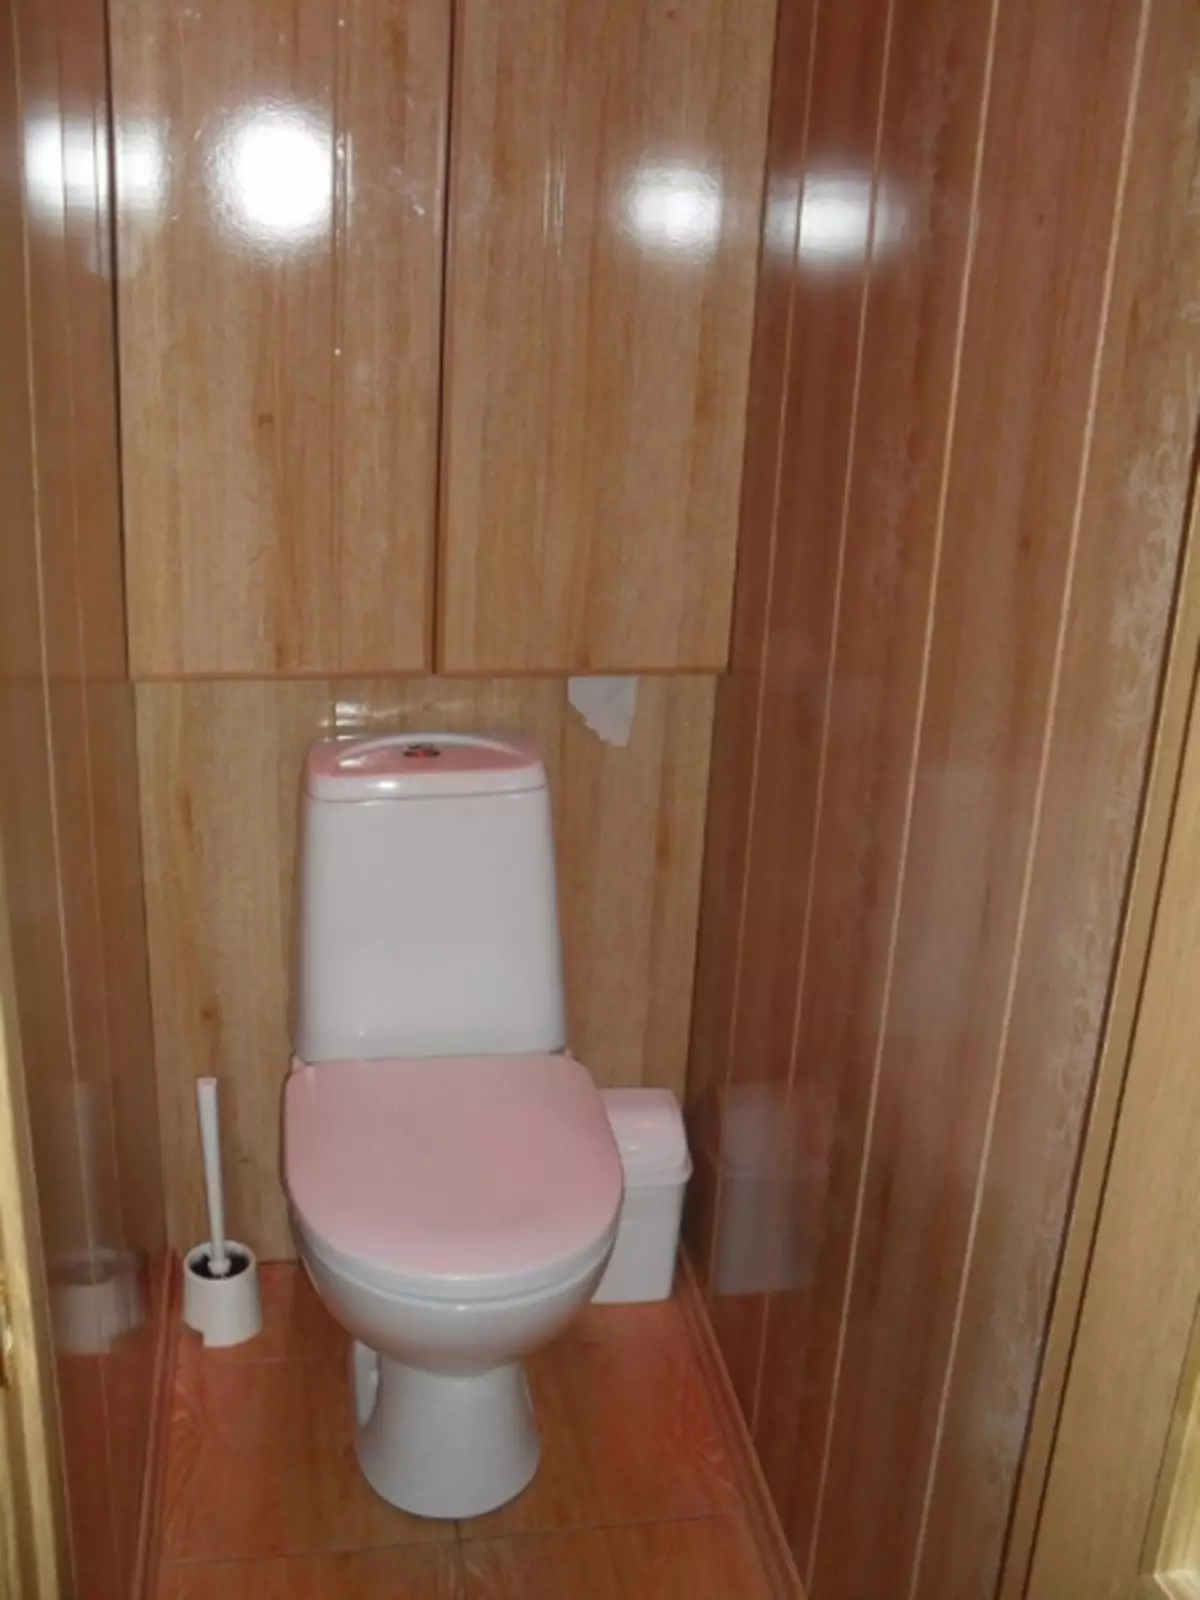 Reparatur an Design vun Toilette an Khruschochev (55 Fotoen)